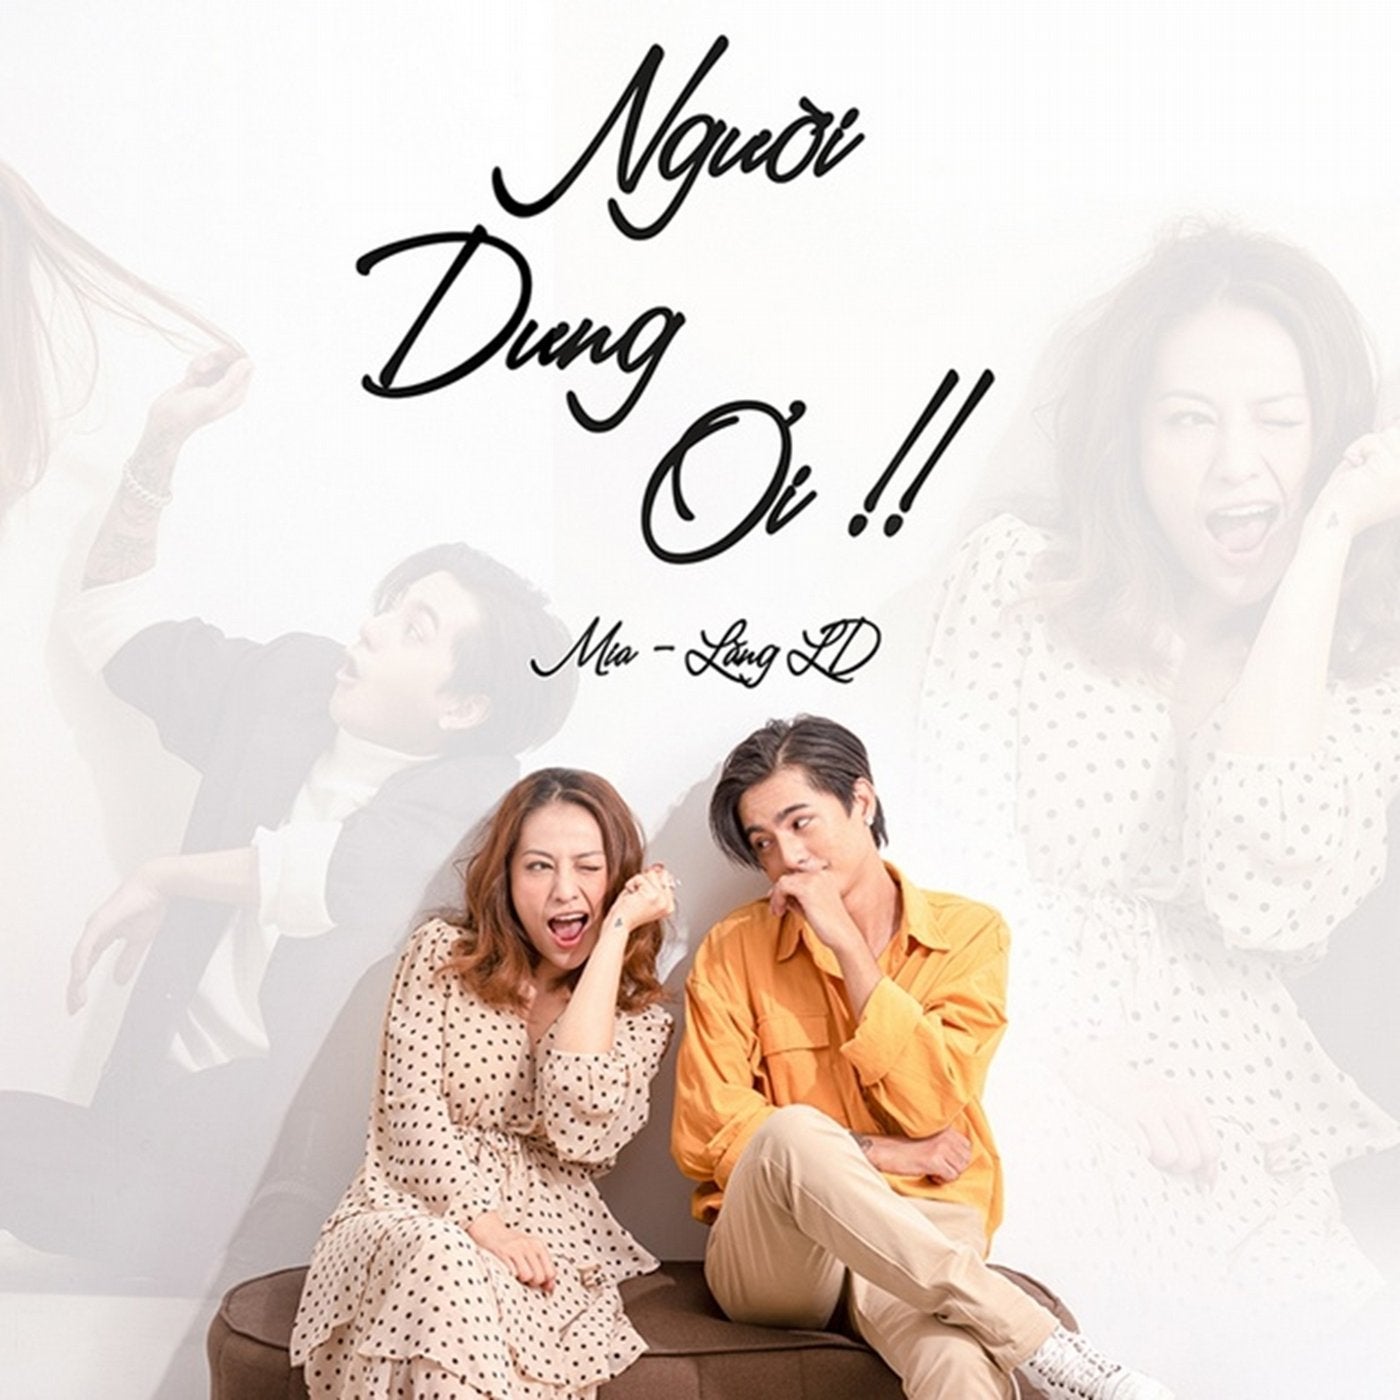 Nguoi Dung Oi (feat. Lang LD)